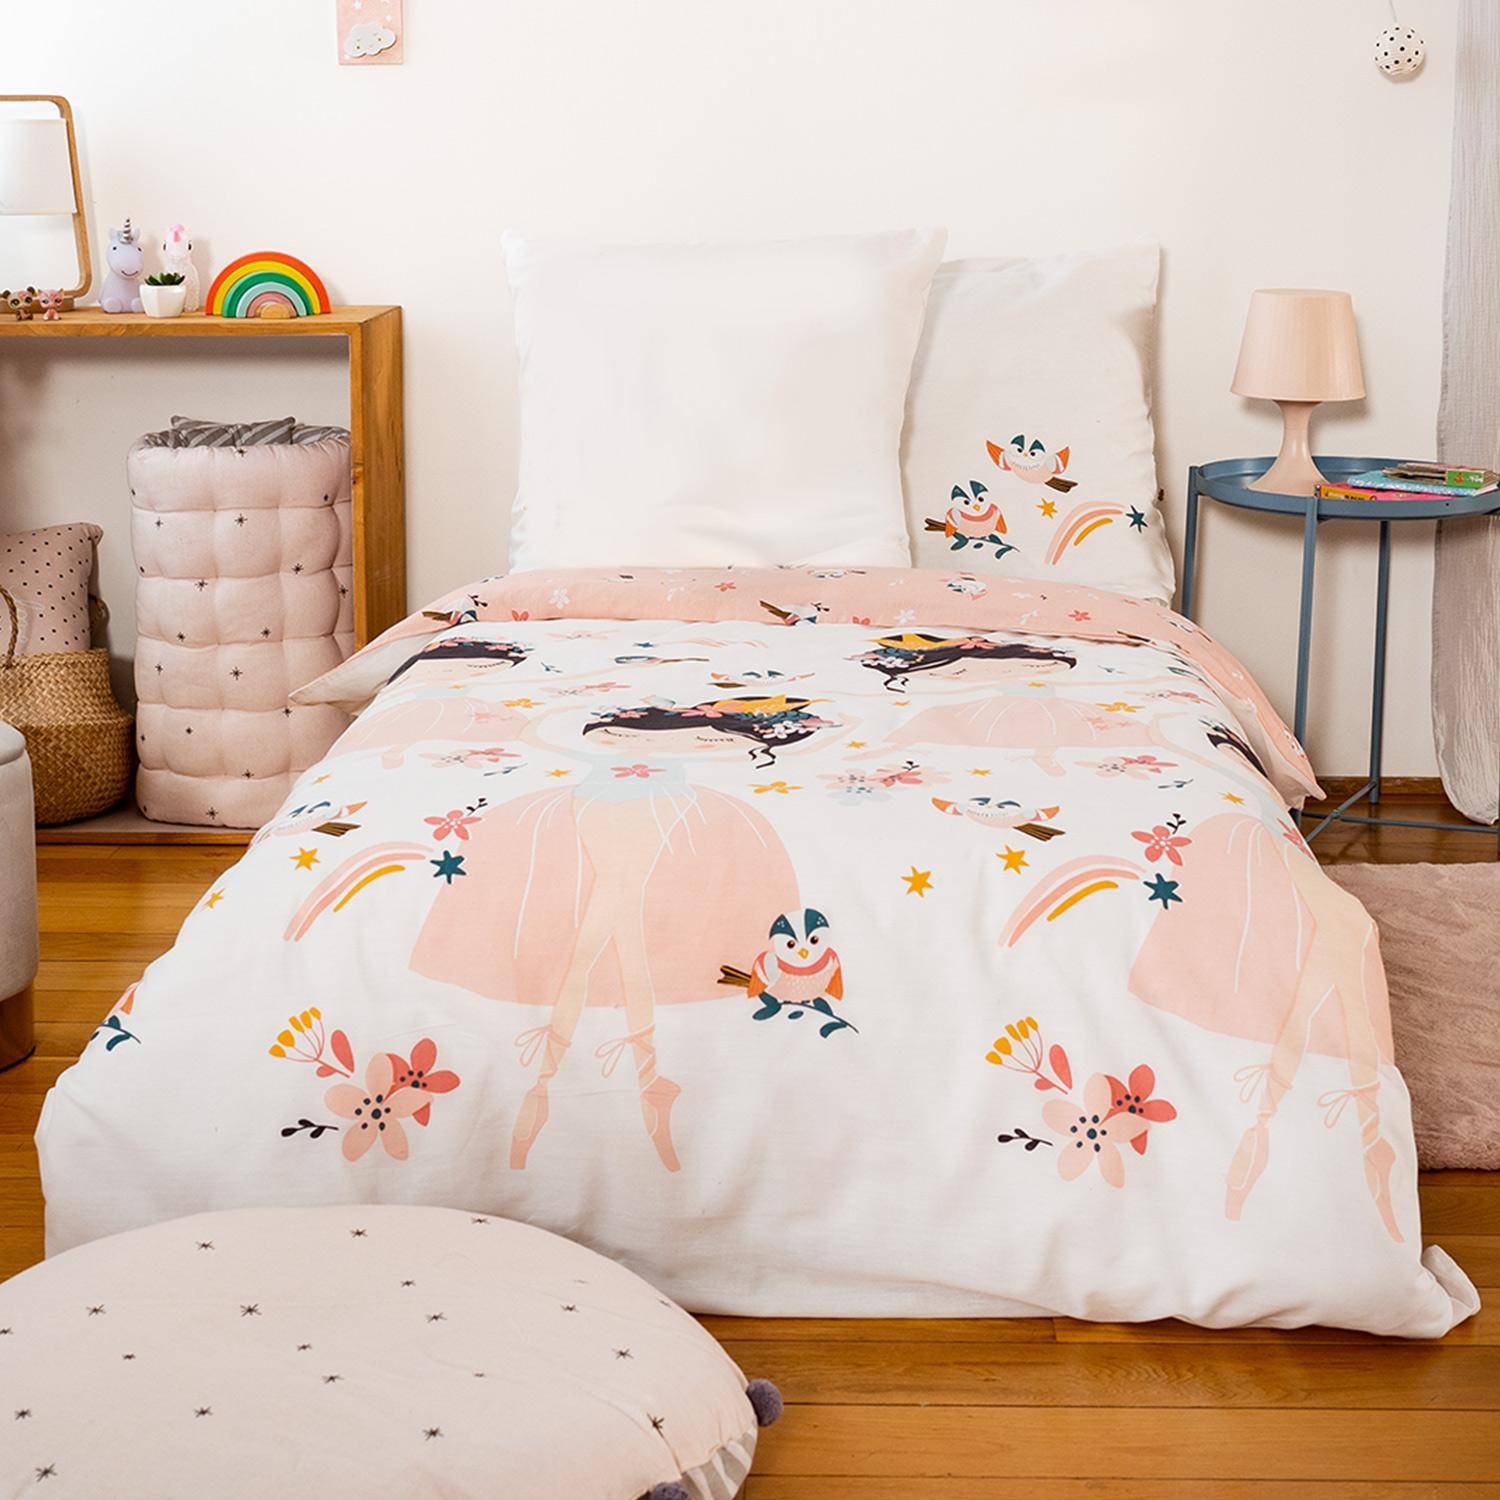 Wendebettwäsche für 1 Person mit Prinzessinnen- und Vogelmotiven aus Polybaumwolle, 1 Bettbezug und 1 Kopfkissen Photo1